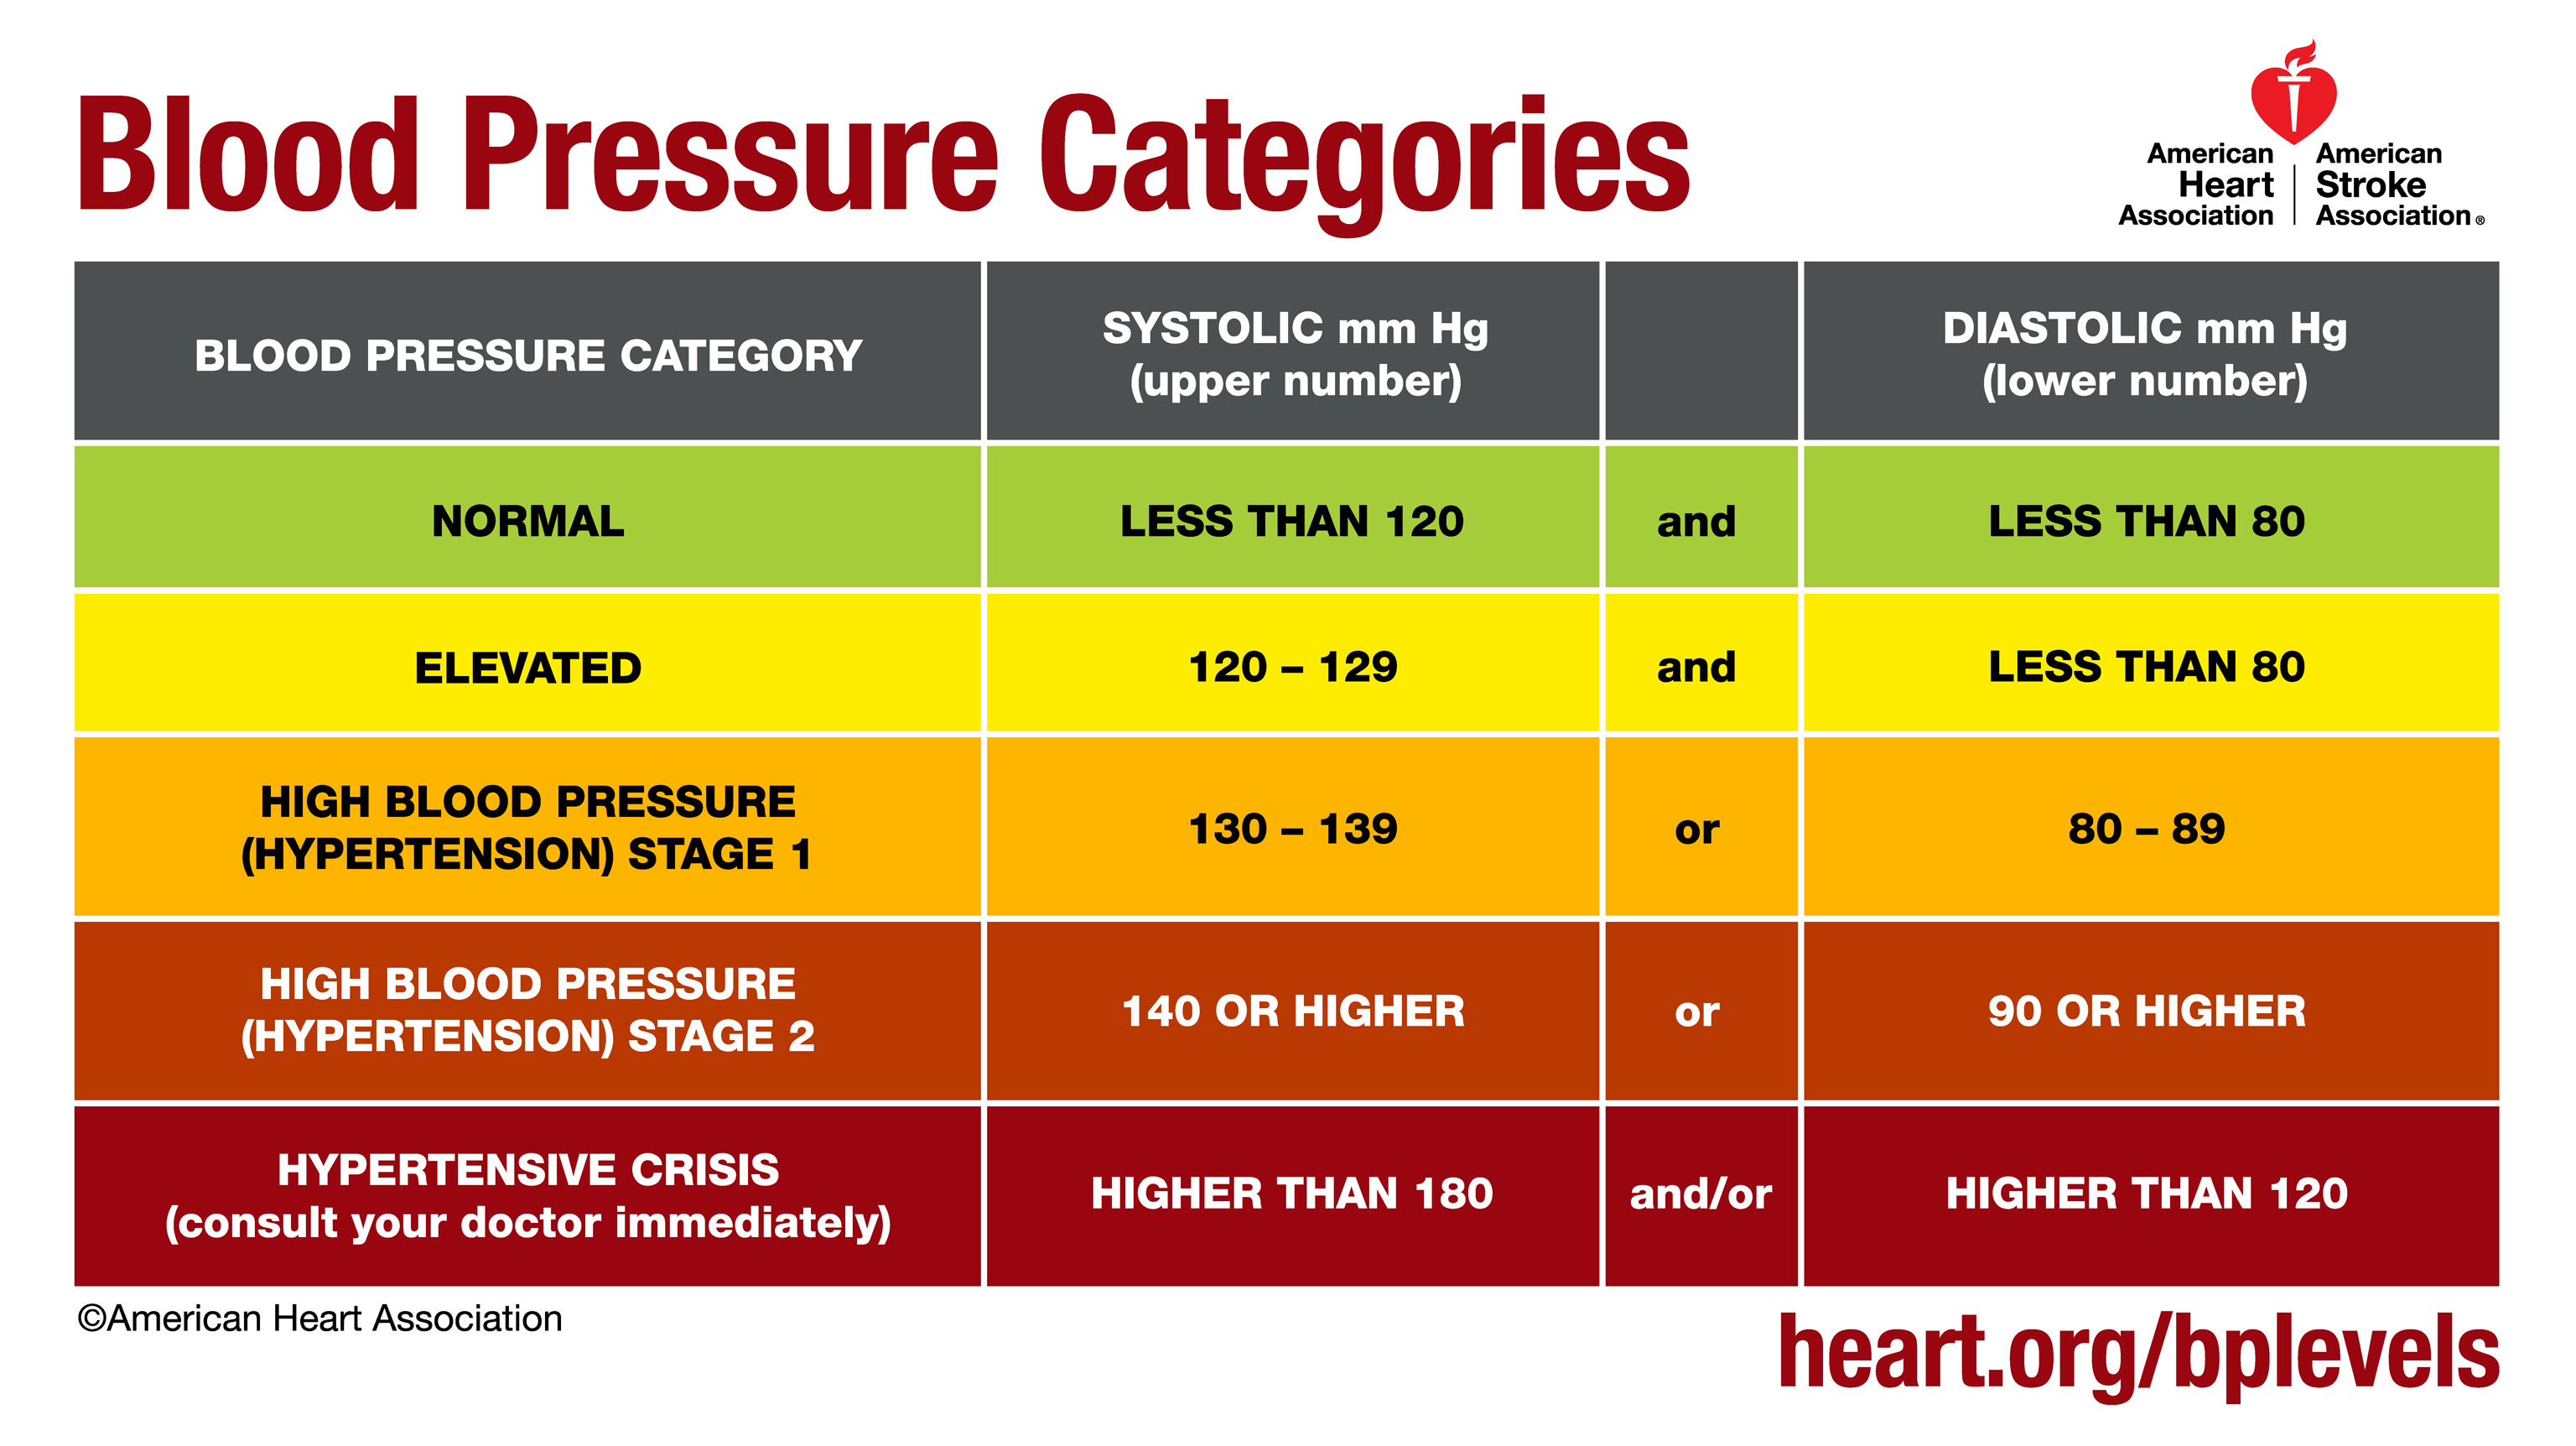 A vérnyomás értékek és diagramok magyarázata